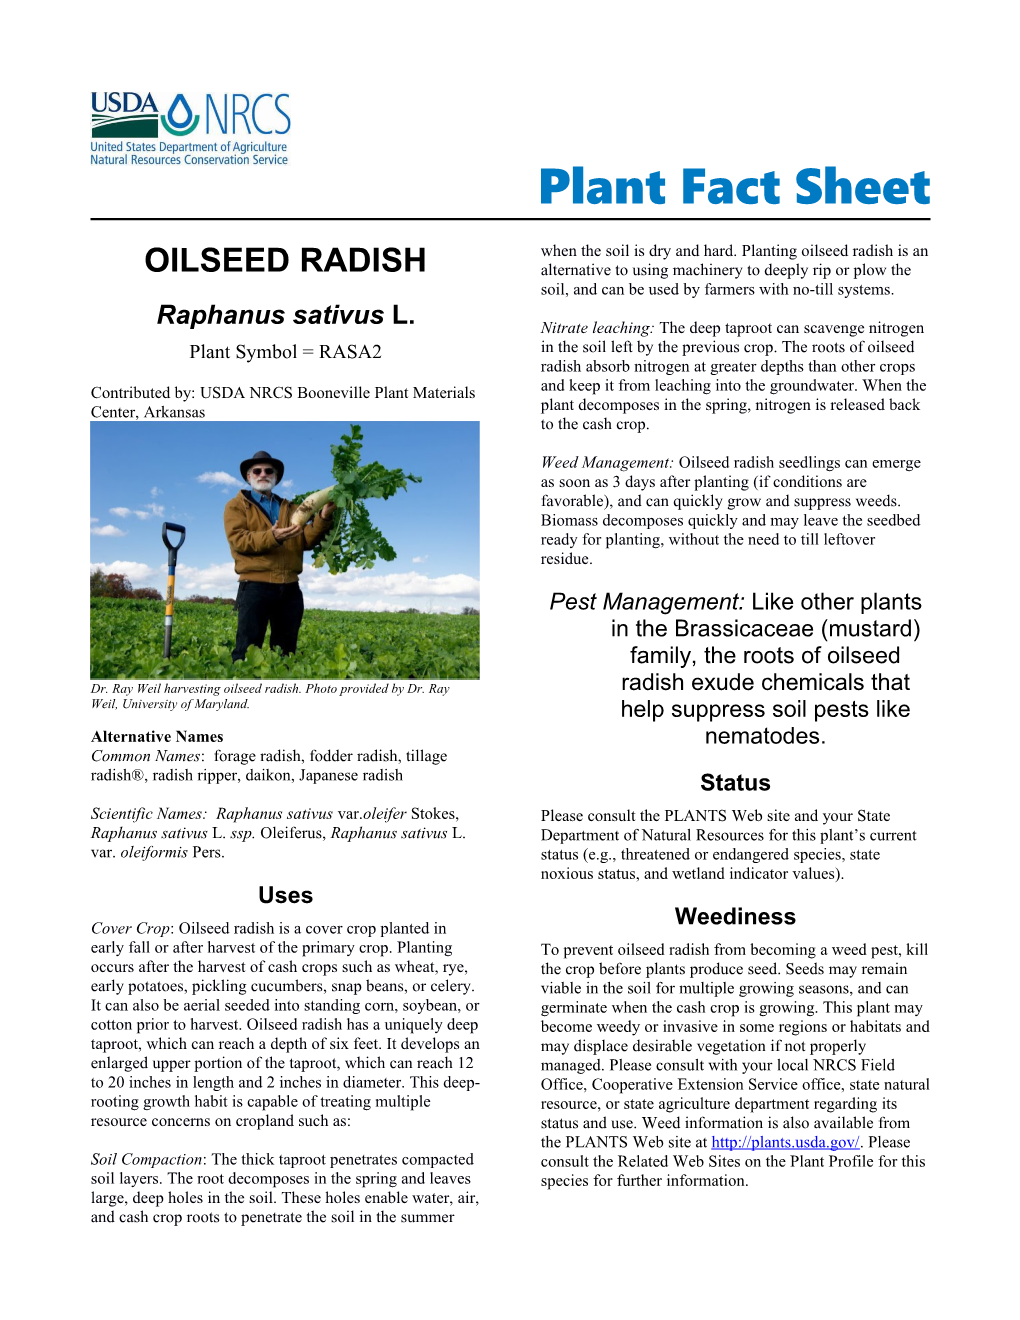 Oilseed Radish (Raphanus Sativus) Plant Fact Sheet